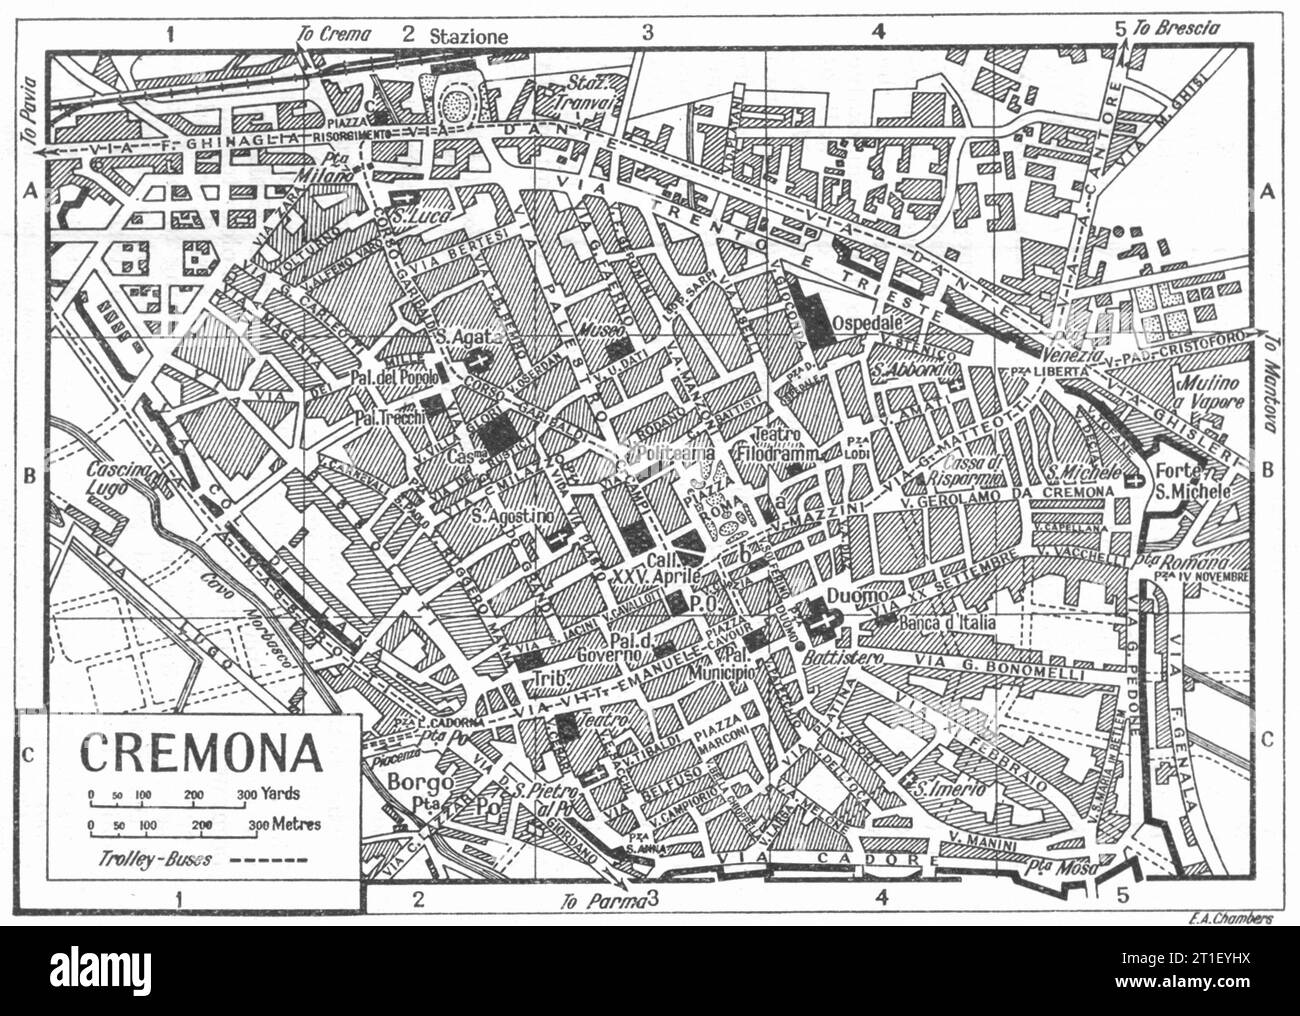 Piano città DI CREMONA. Italia 1953 vecchia mappa d'epoca Foto Stock